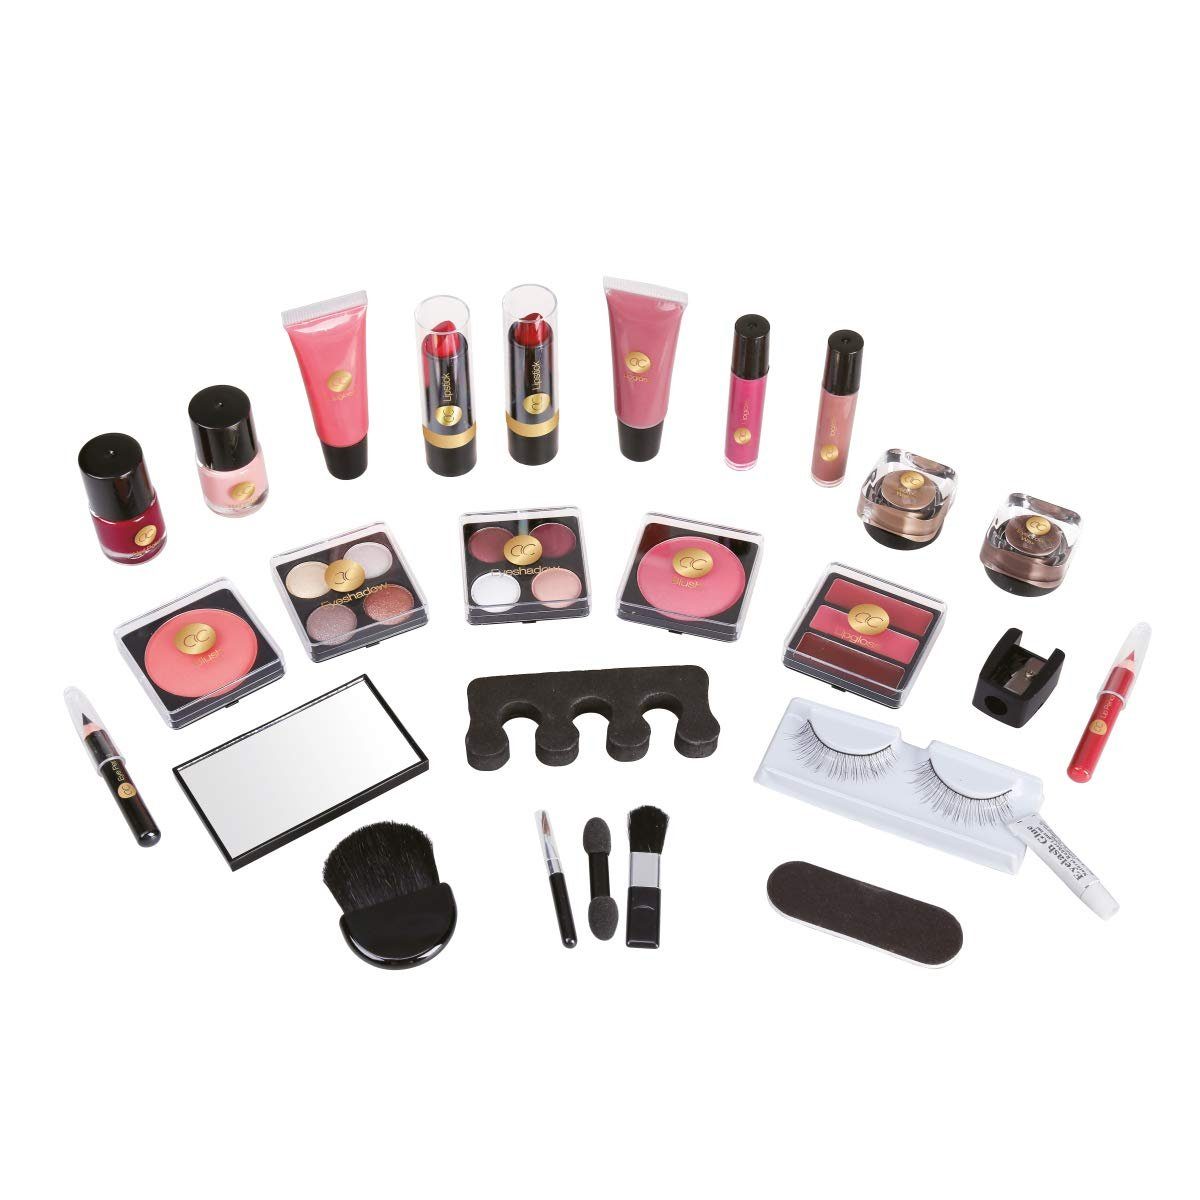 ACCENTRA Adventskalender im Advent Kosmetik-Spiegel Schmink-Set 24 Schminke Make-up Zehenspreizer, umfangreiches Kleinigkeiten Beauty-Adventskalender vom mit Styling